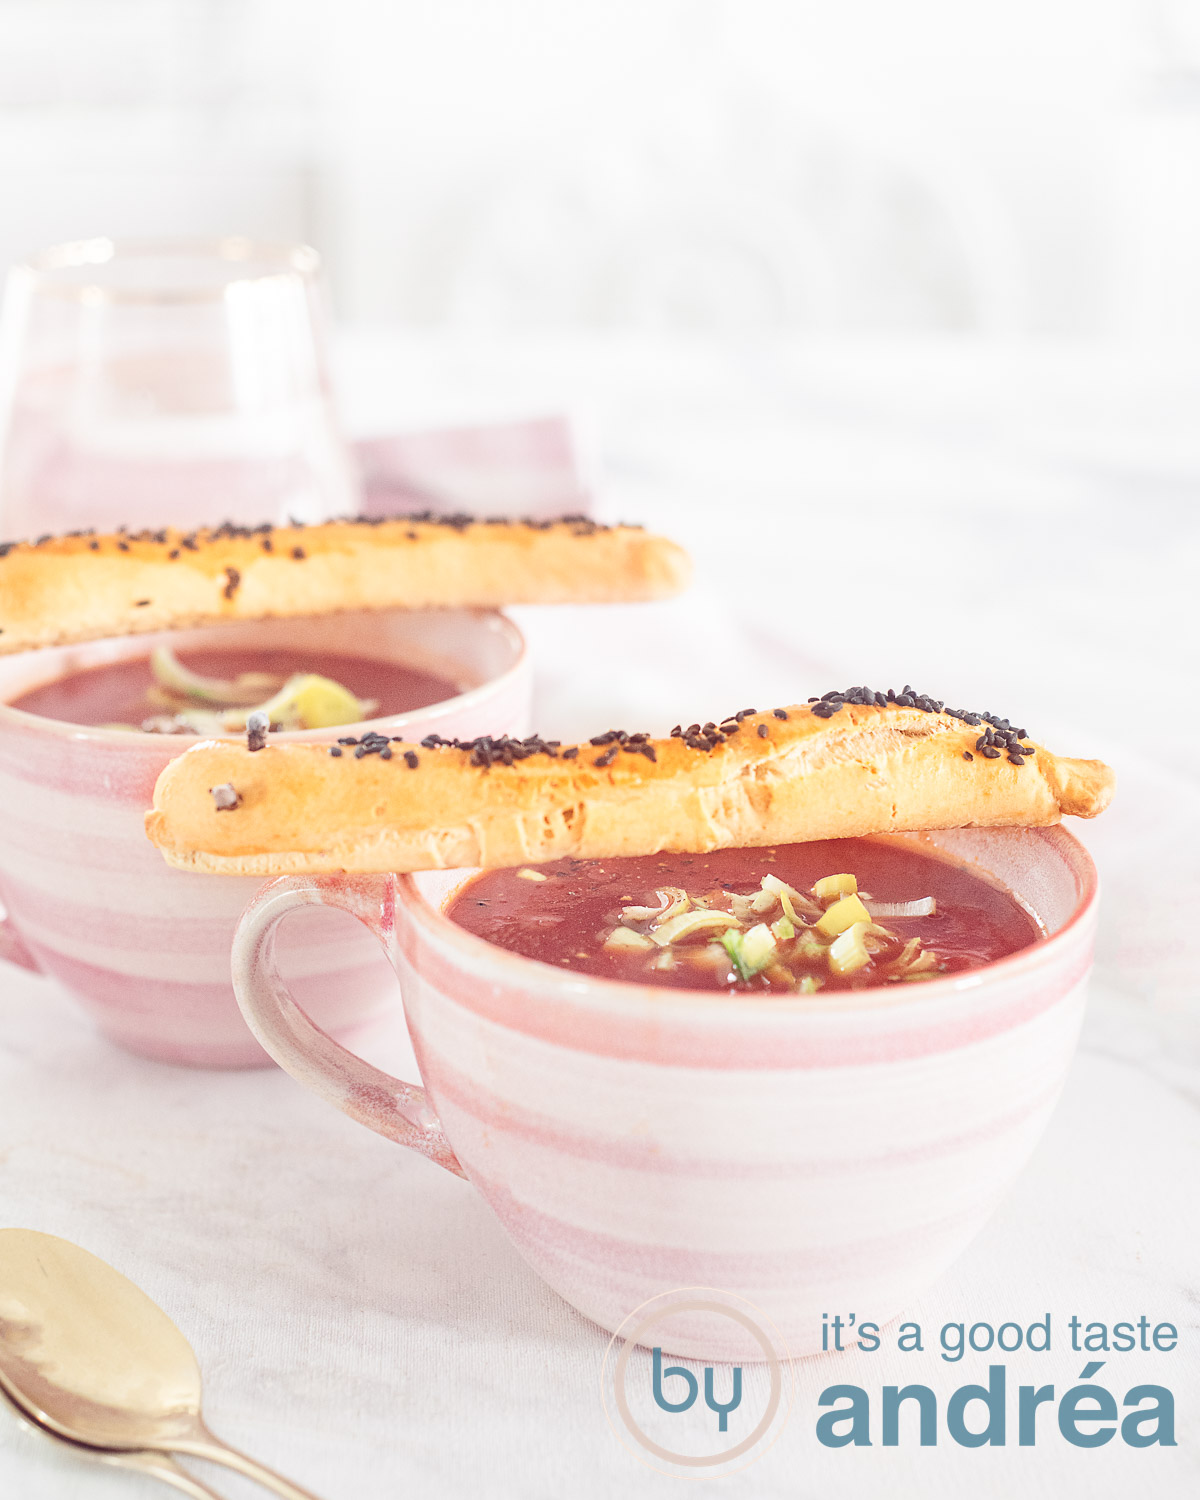 Tomaten prei soep met slissende slangen in een roze kopje op een witte ondergrond